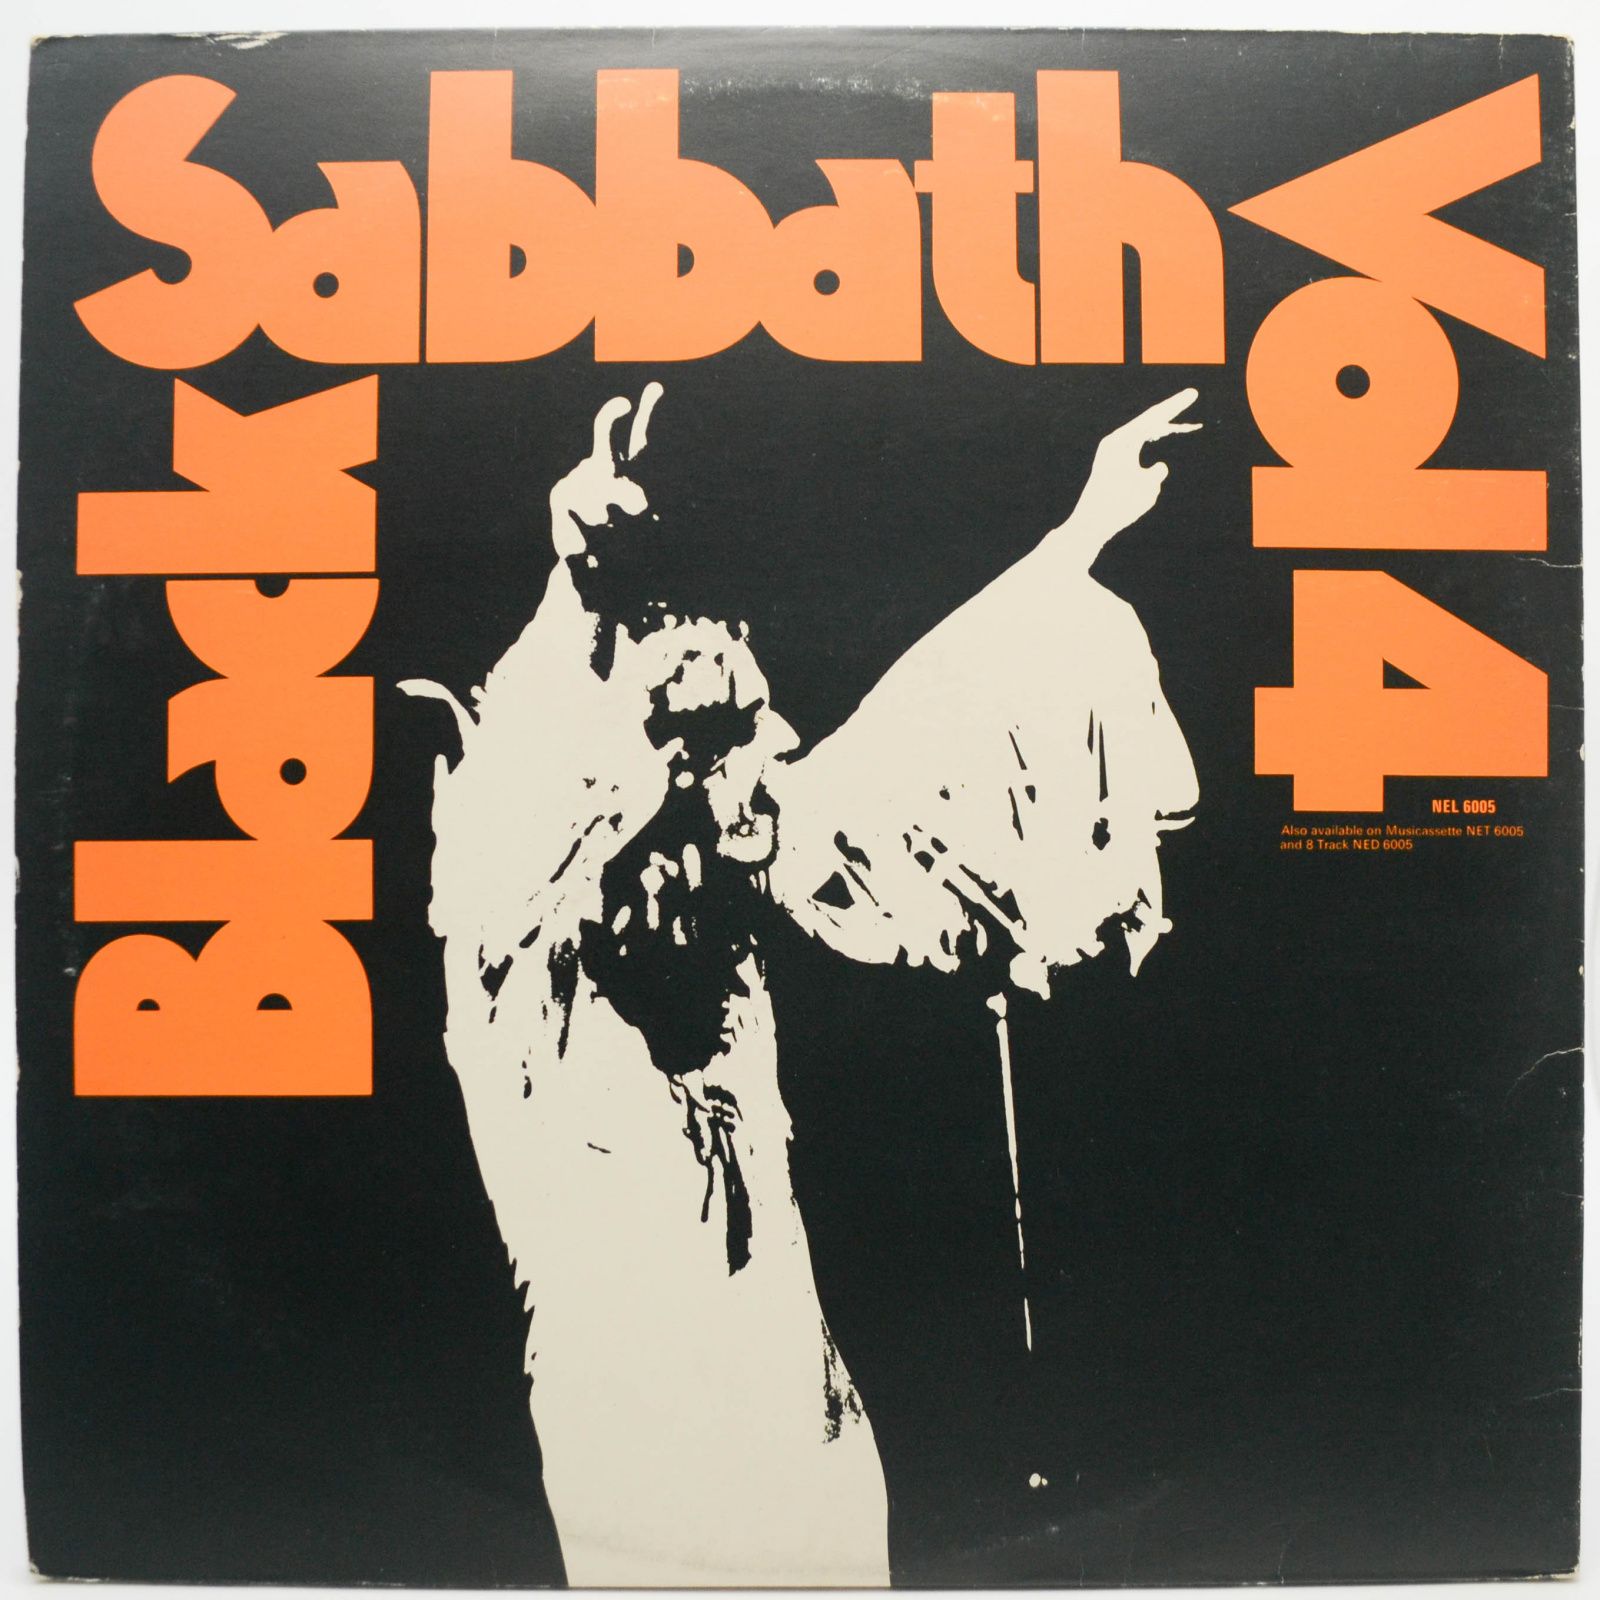 Black Sabbath — Black Sabbath Vol 4 (UK), 1972